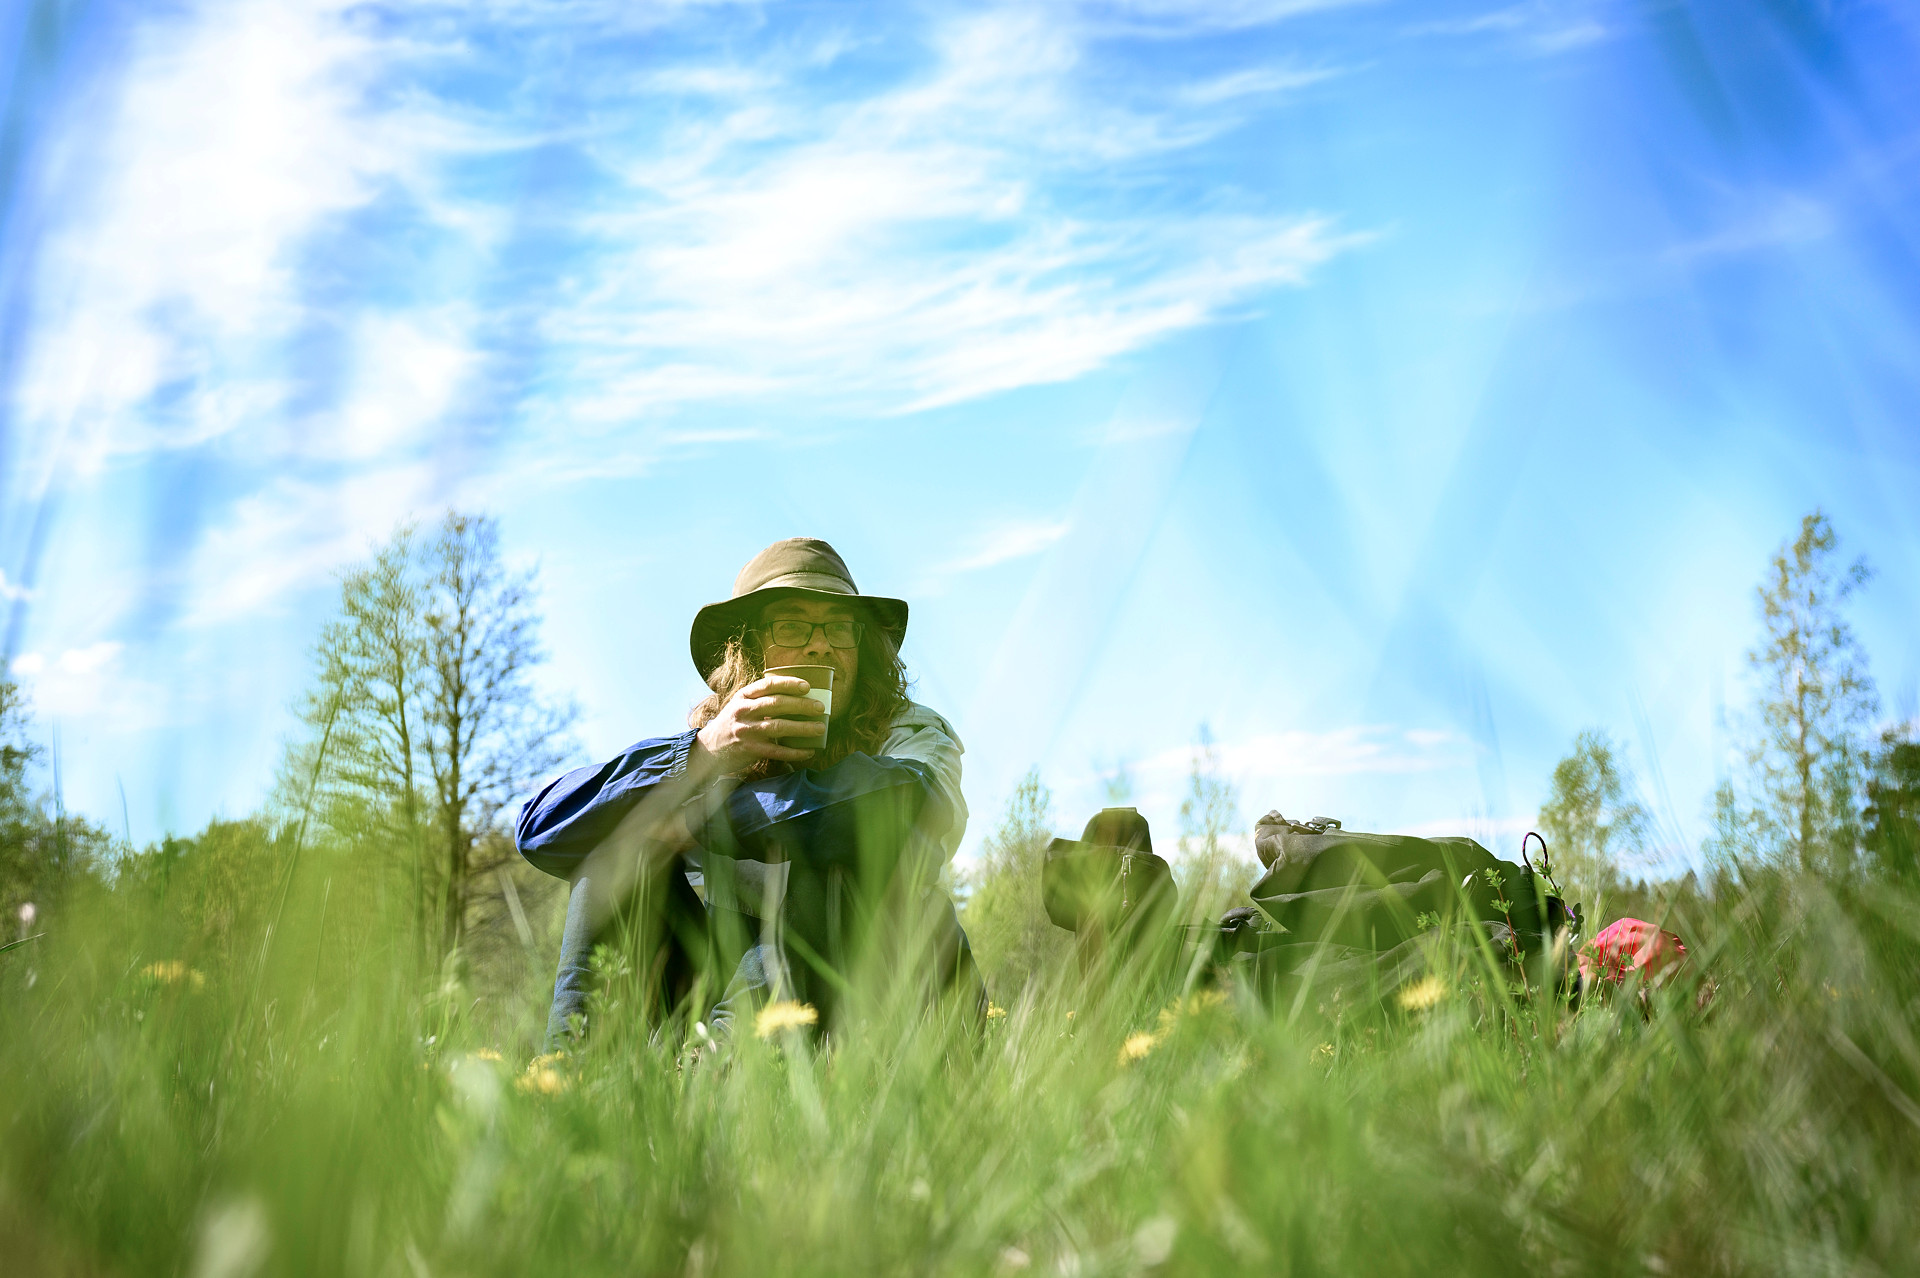 En man i hatt sitter i gräset och dricker kaffe. Himmlen är blå och nan ser ut att njuta. 